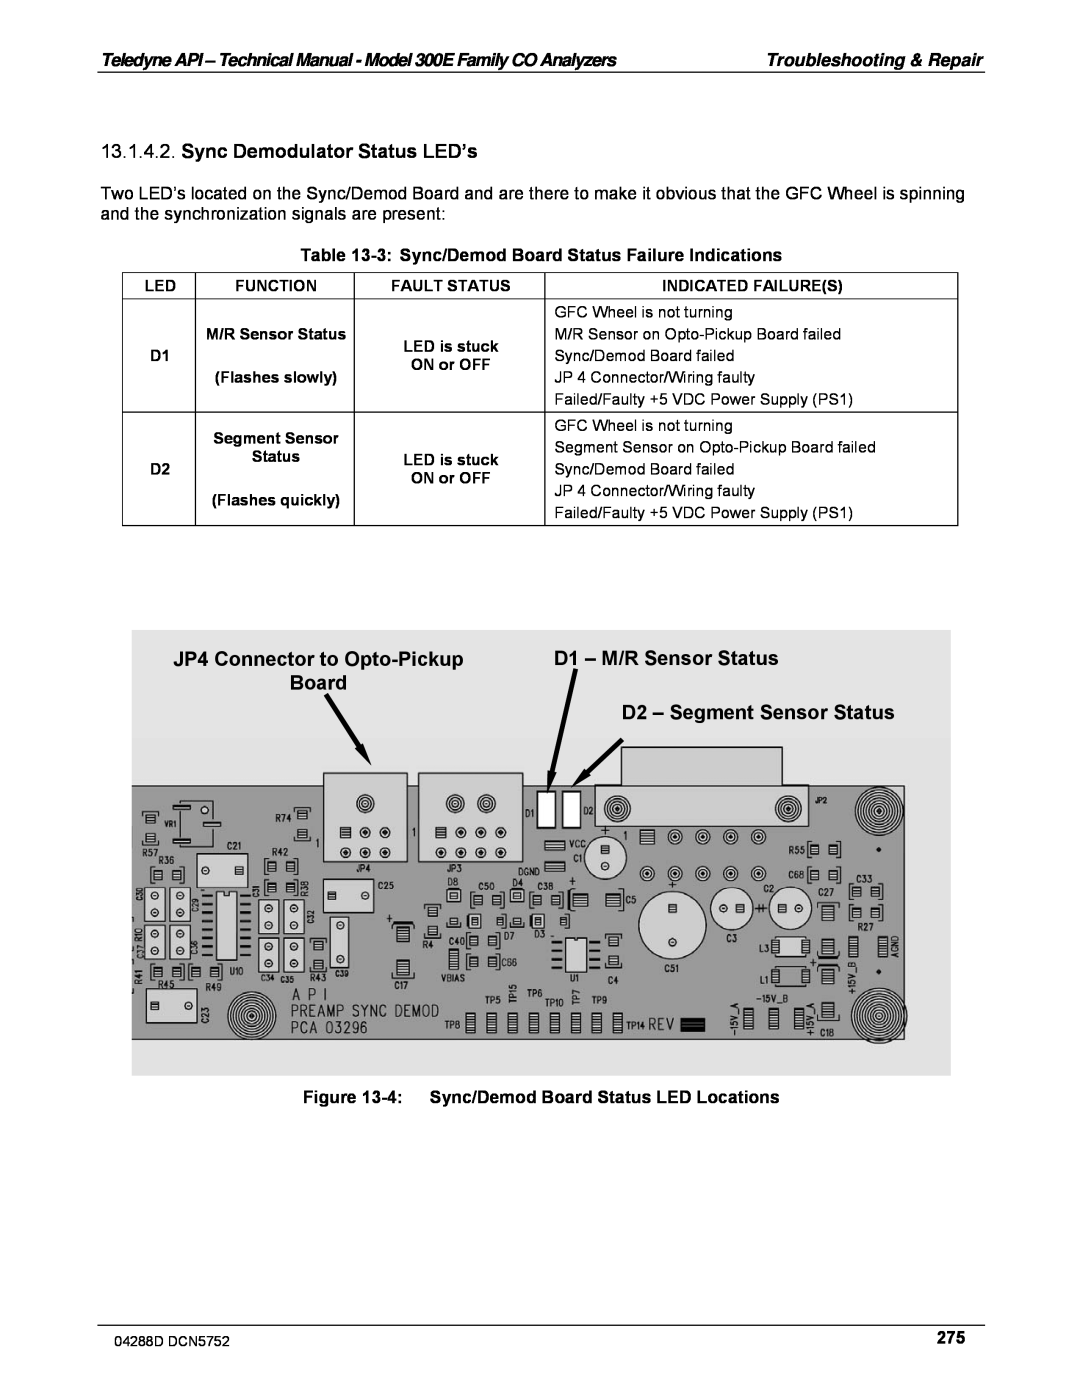 Teledyne M300EM Sync Demodulator Status LED’s, JP4 Connector to Opto-Pickup, D1 – M/R Sensor Status, Board 